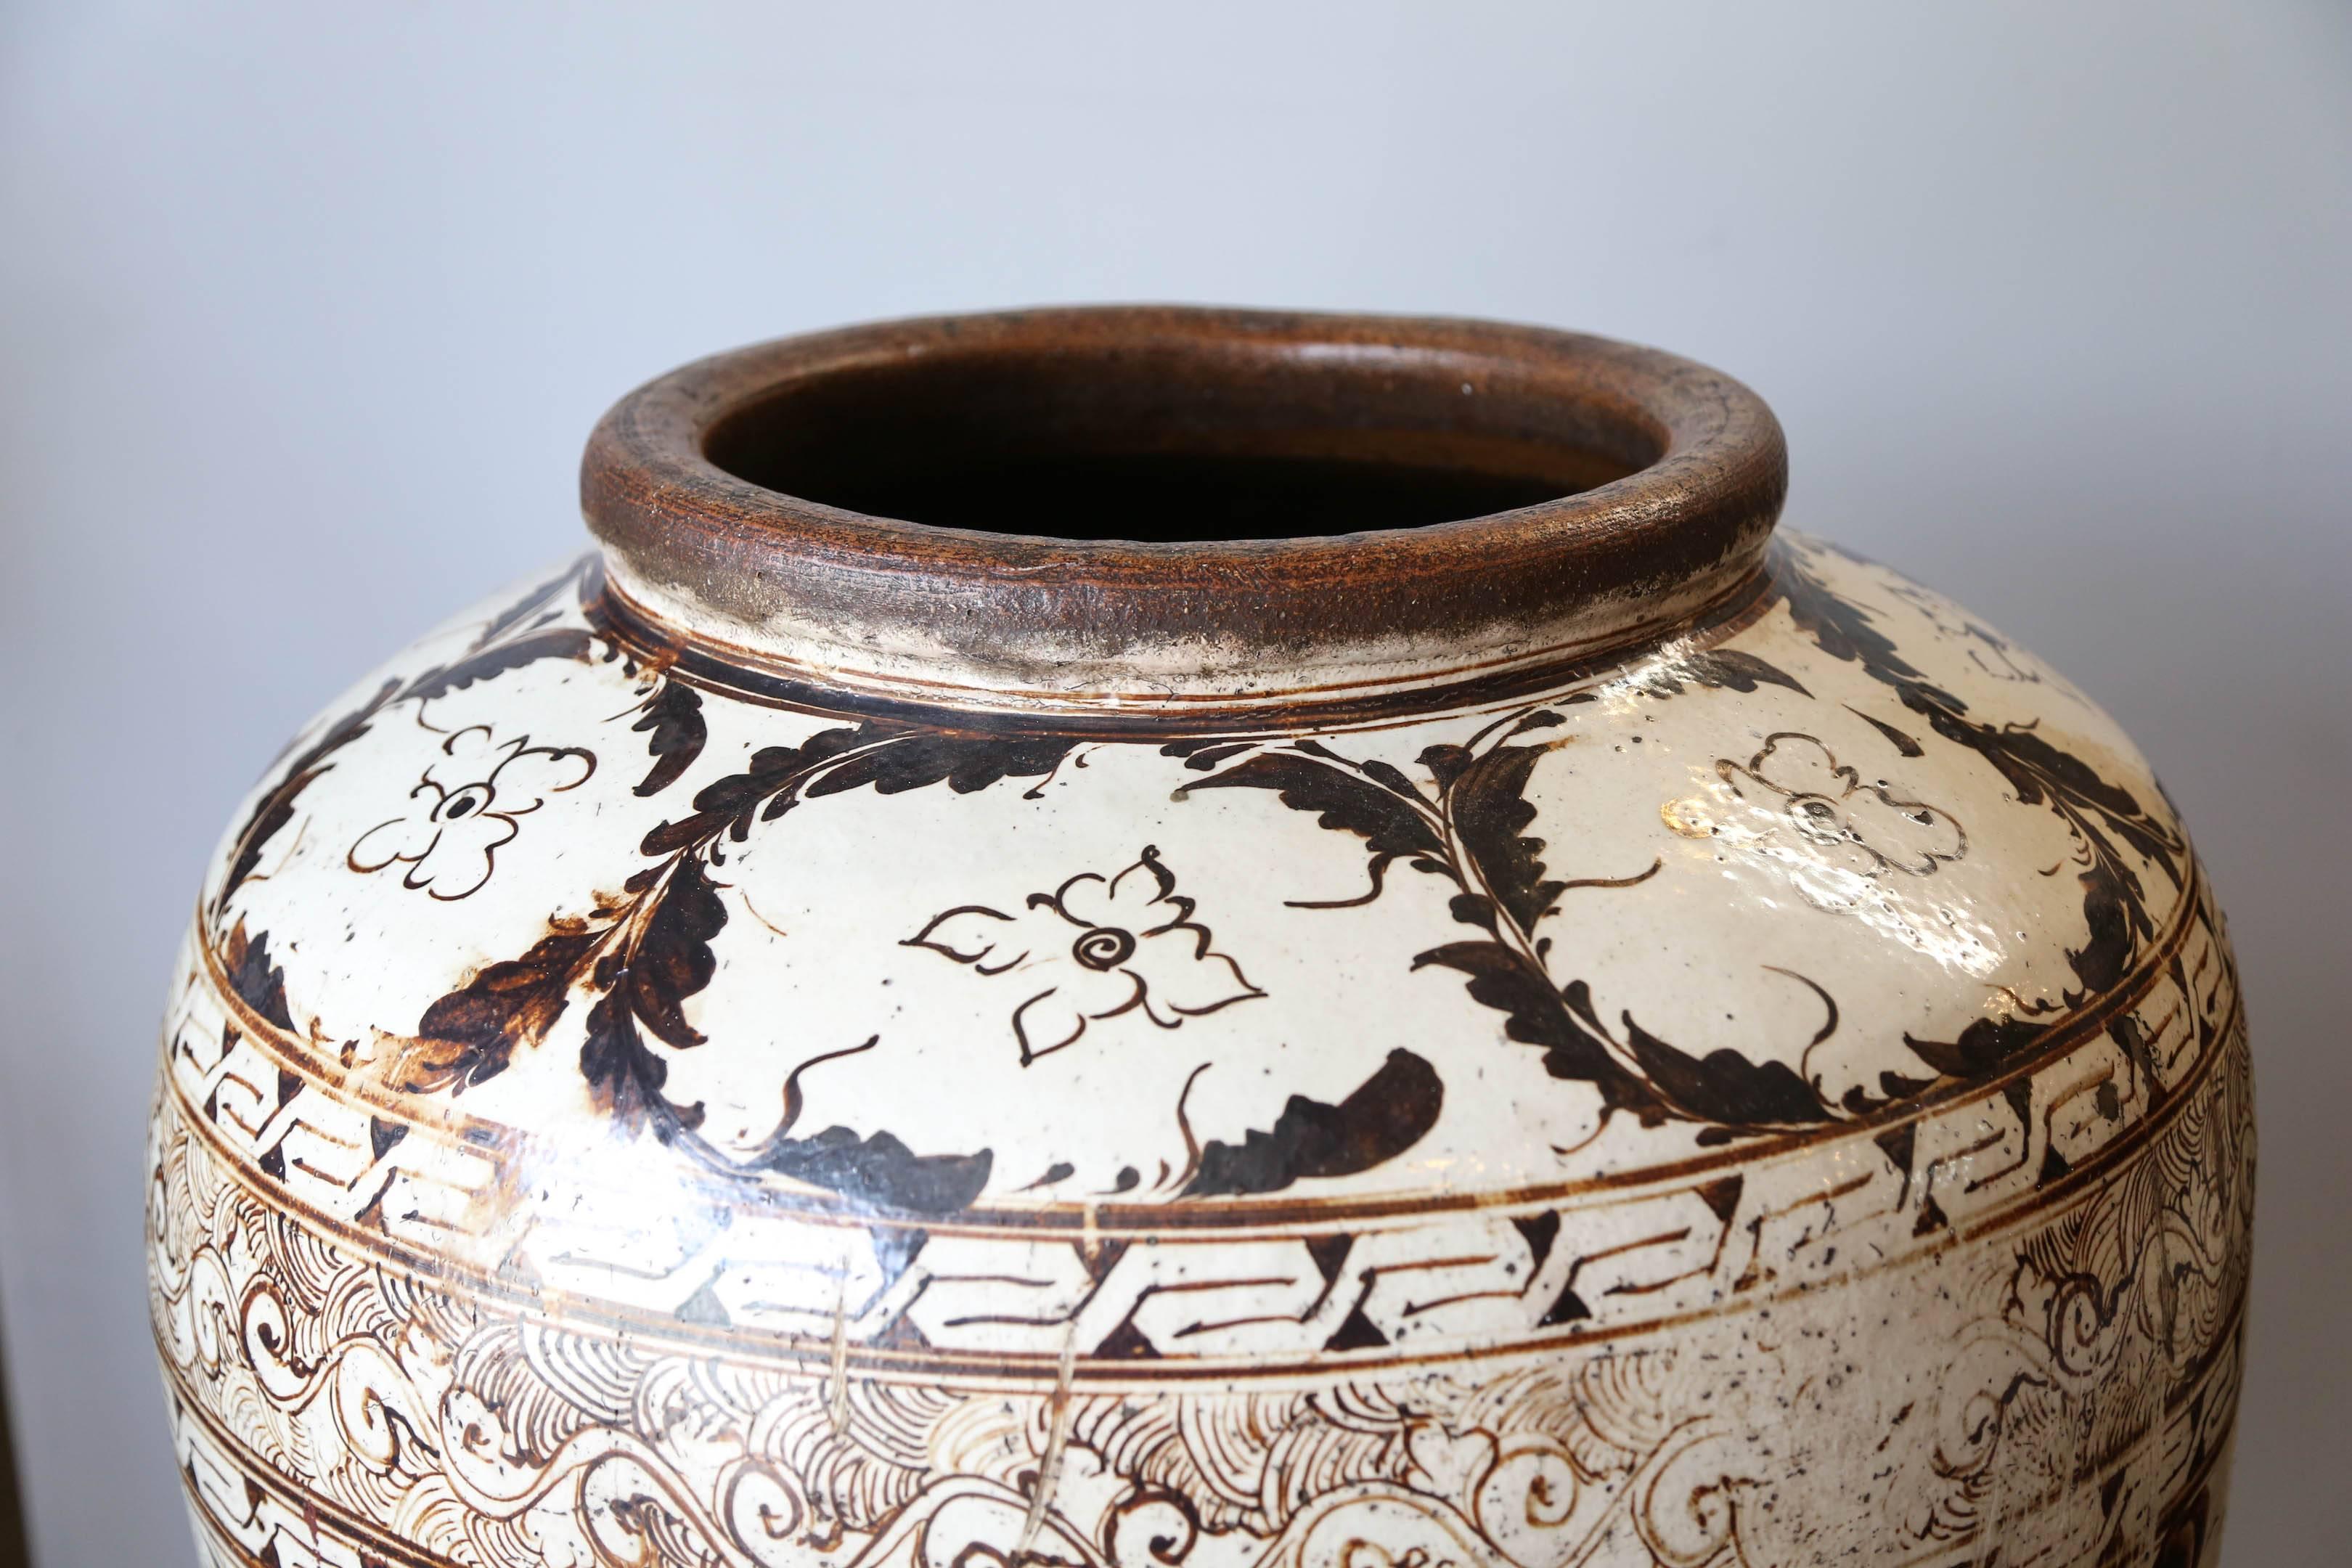 Schöne sehr große Cizhou Ware braun bemalt Keramik Krug mit Blättern und Blumen Dekor. Ein Wellenband unterhalb des Halses. Guter Zustand. 
Ein sehr vergleichbares:: aber etwas kleineres Gefäß befindet sich in der Sammlung des Metropolitan Museum